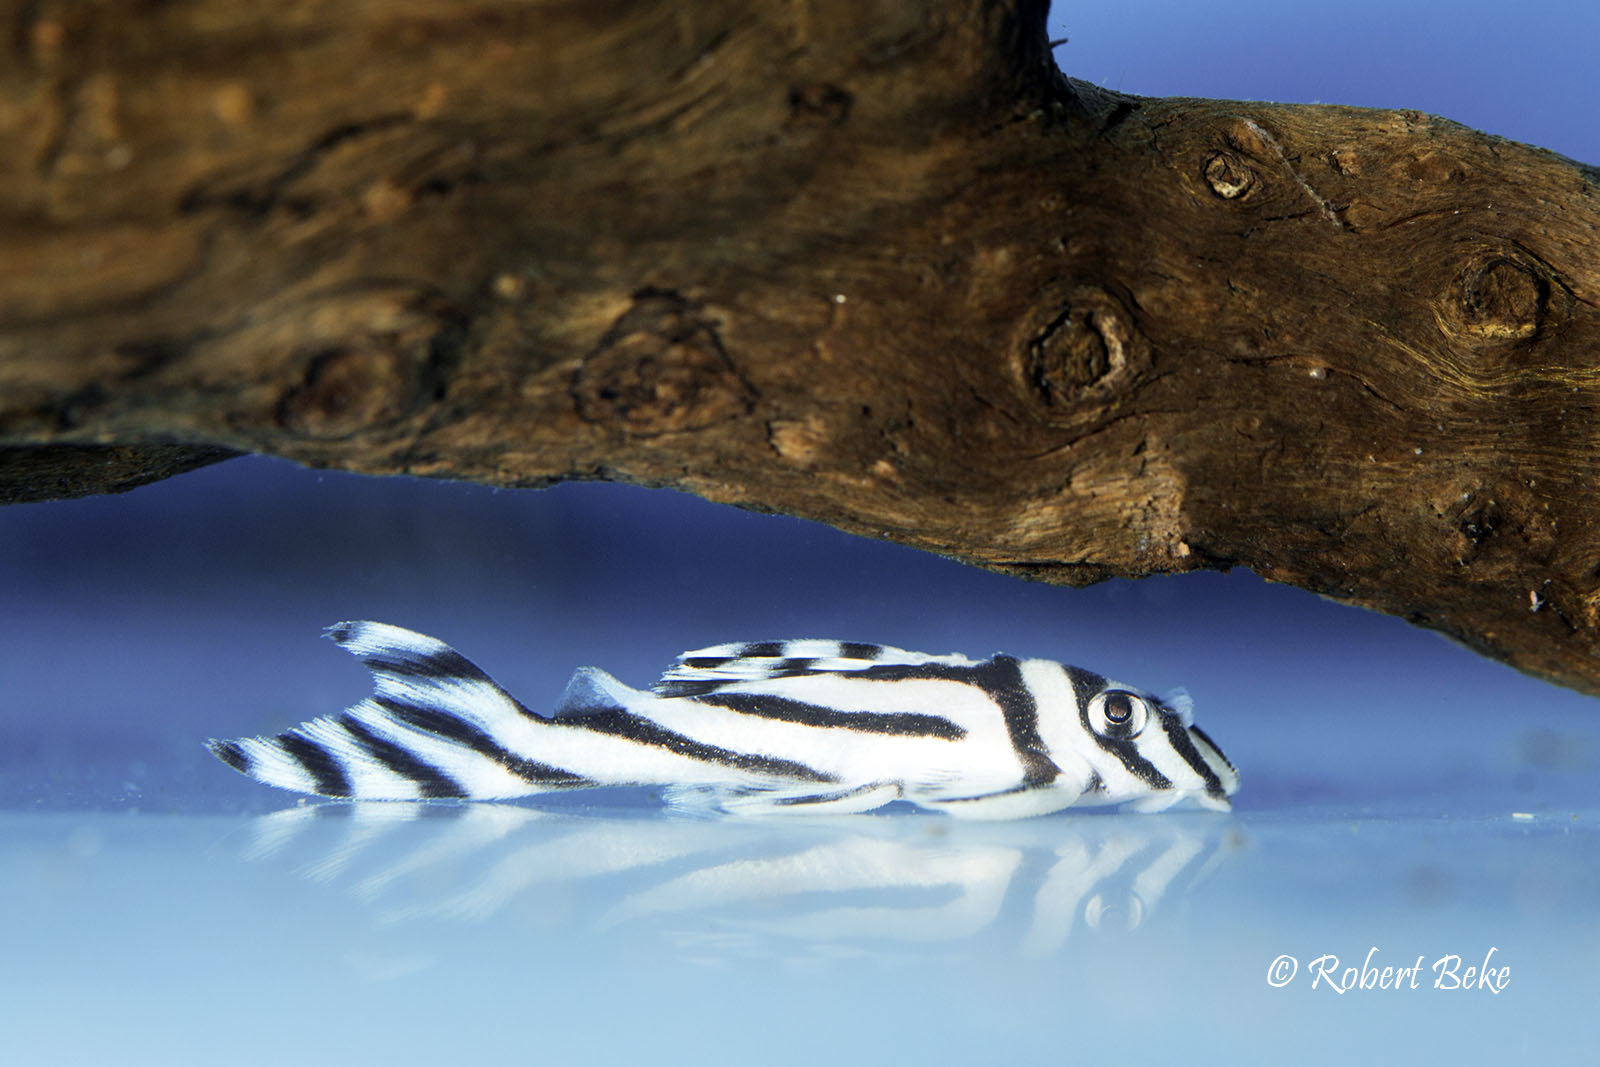 Hypancistrus zebra